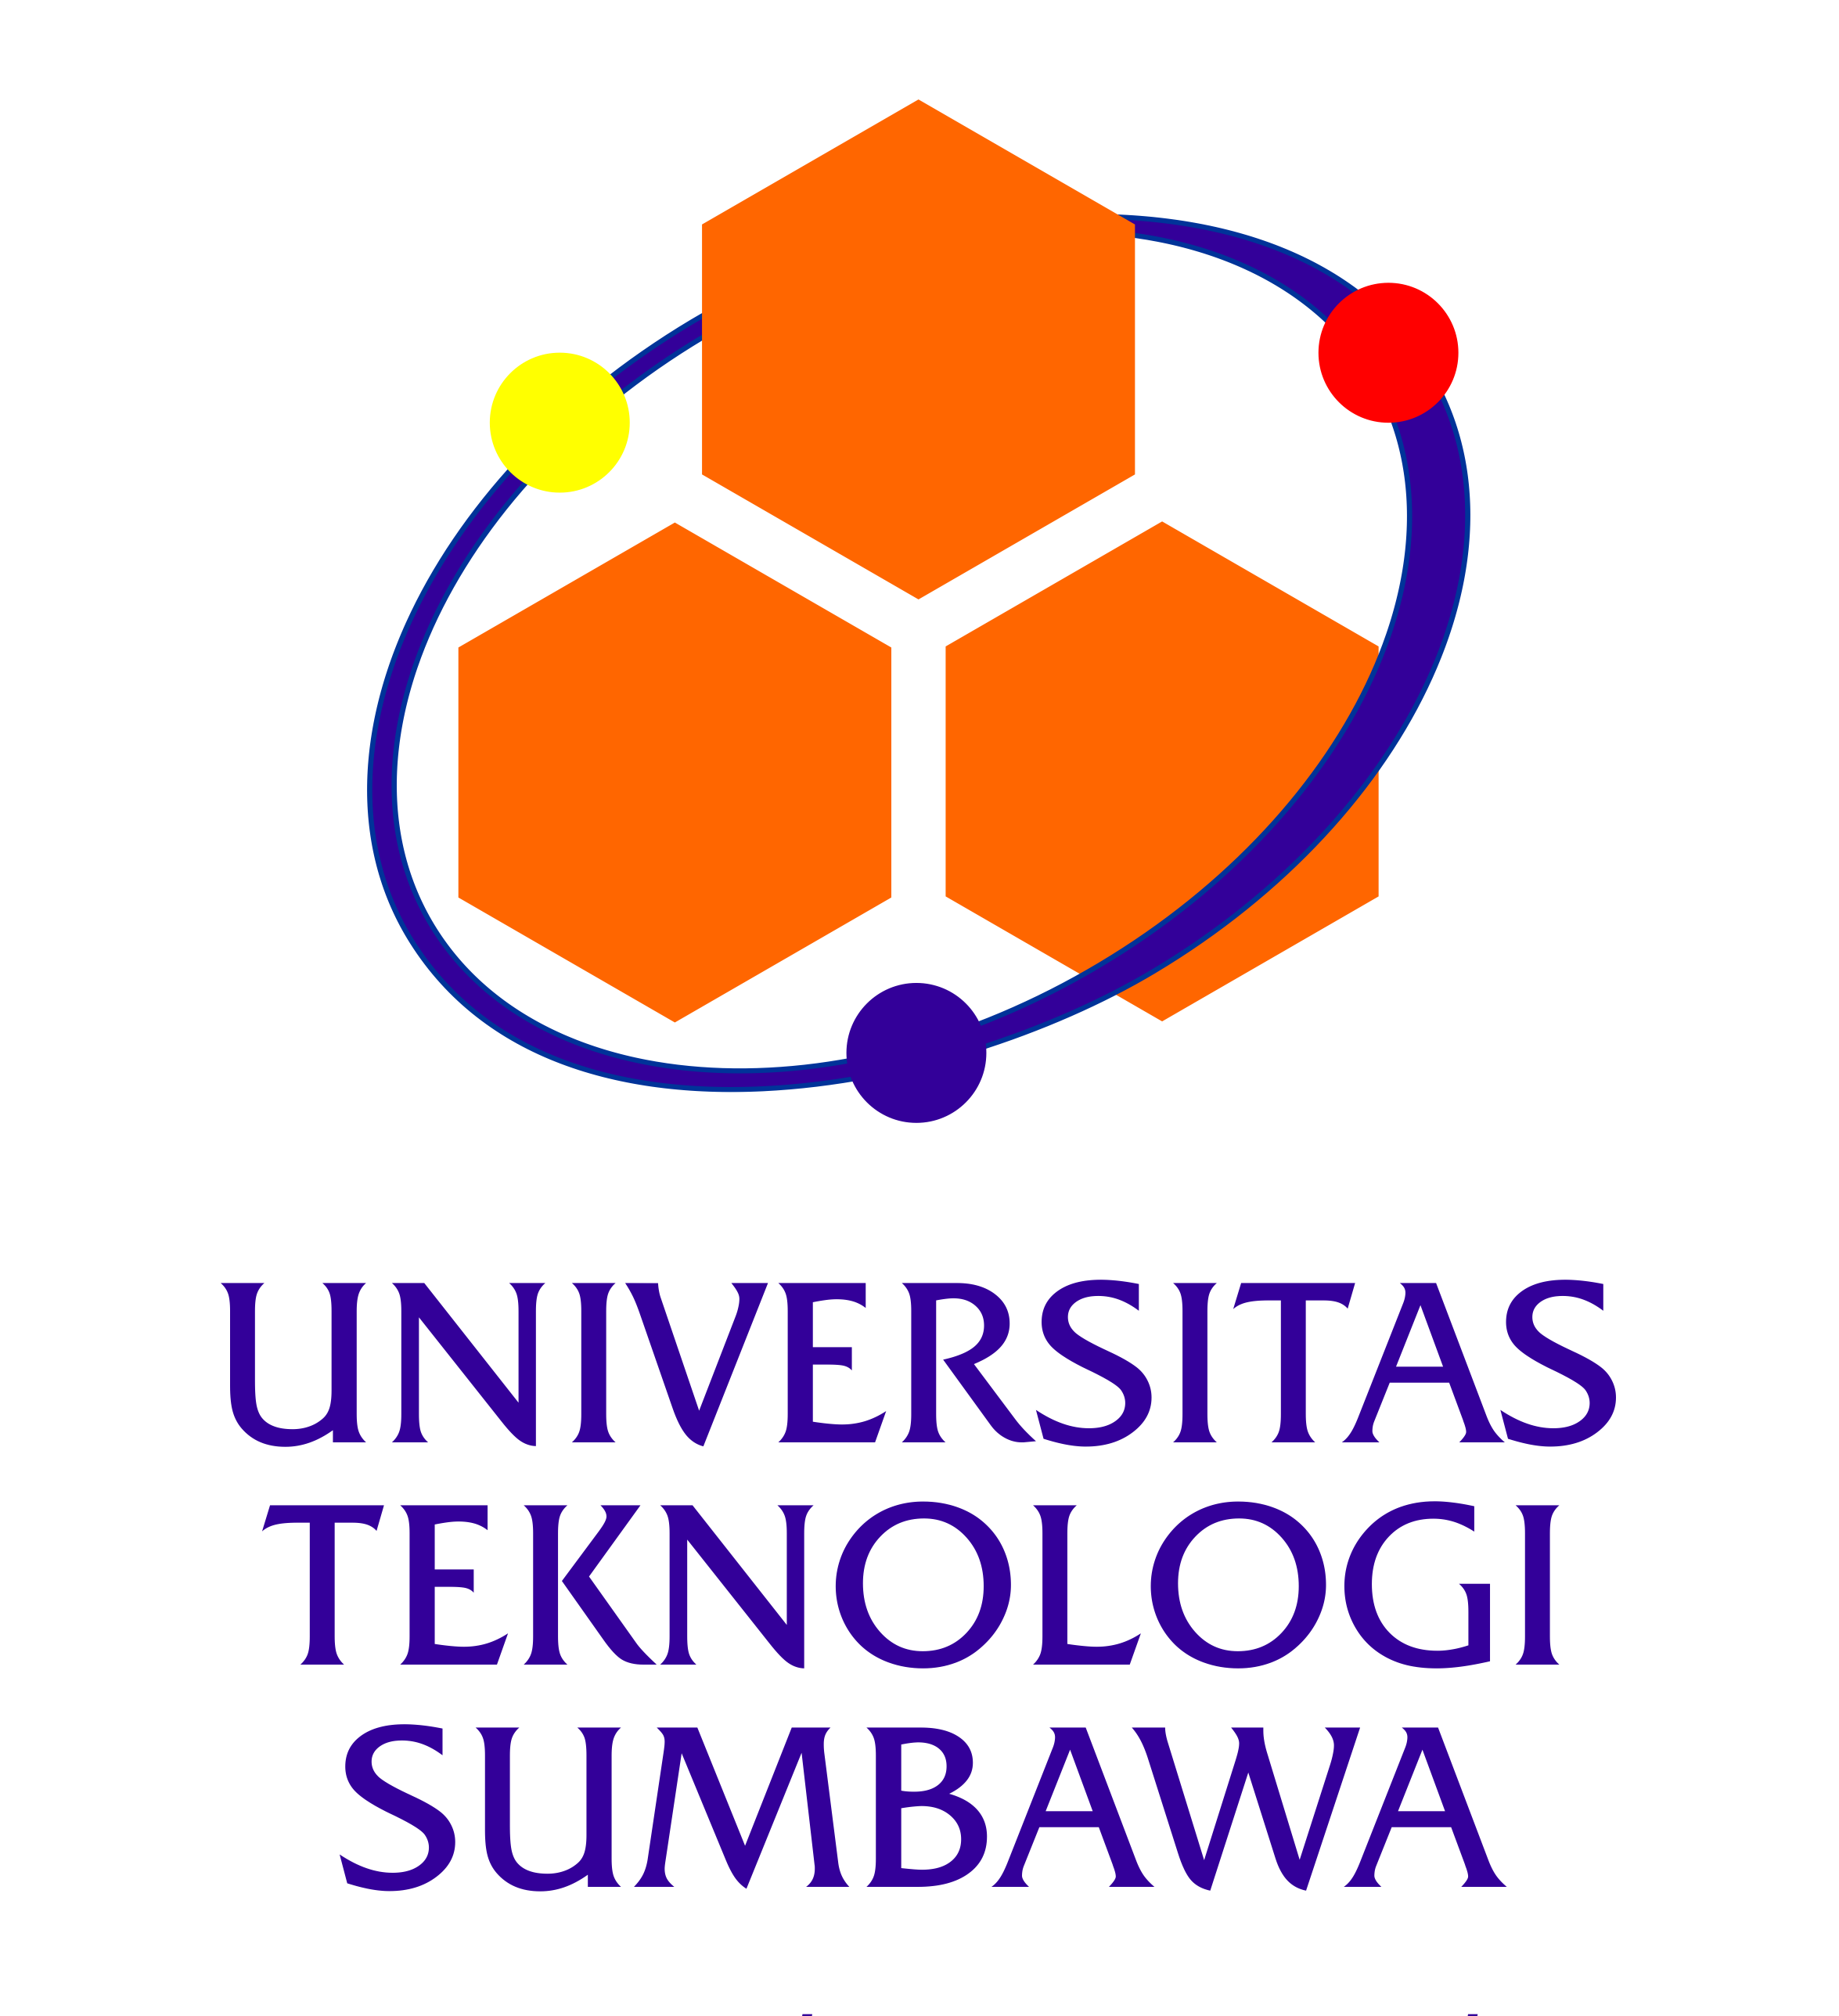 Universitas Teknologi Sumbawa